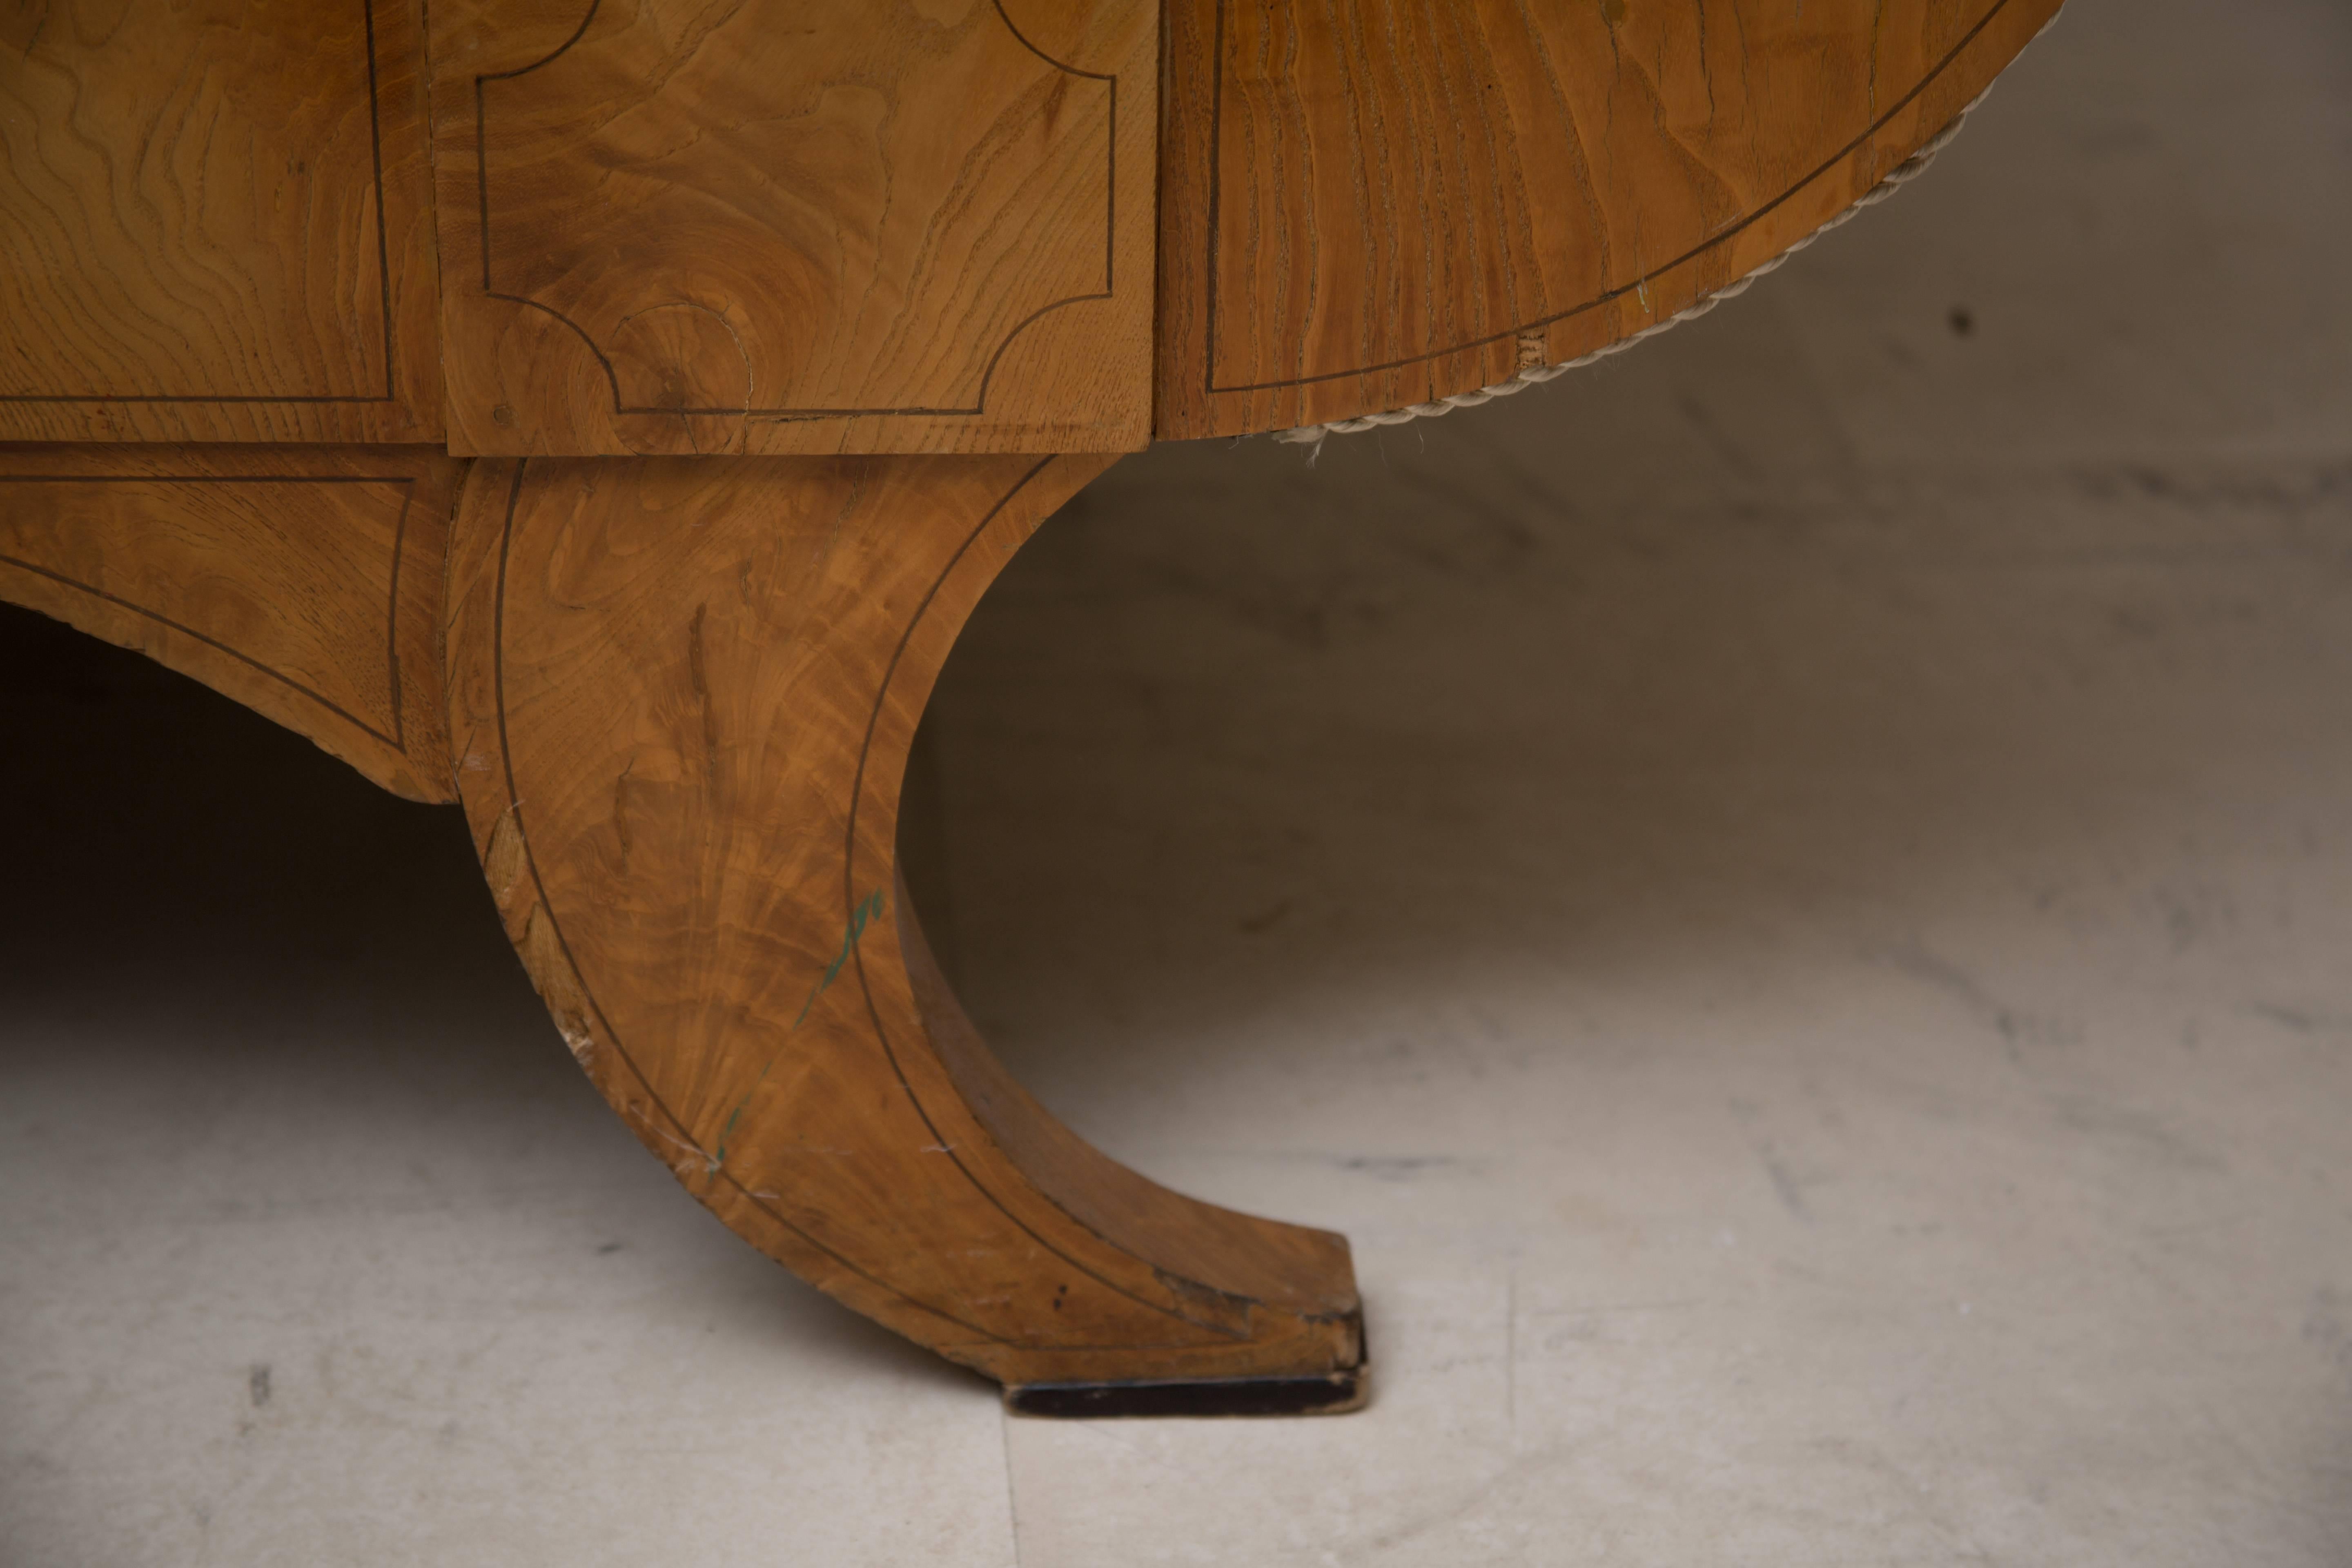 Dies ist ein anmutiges russisches Biedermeier-Sofa aus Kirschholz mit einer gekrönten oberen Schiene, die ein zentriertes ebonisiertes Oval über gepolsterter Rückenlehne und Sitzfläche enthält, flankiert von vollständig gepolsterten Armen über einer